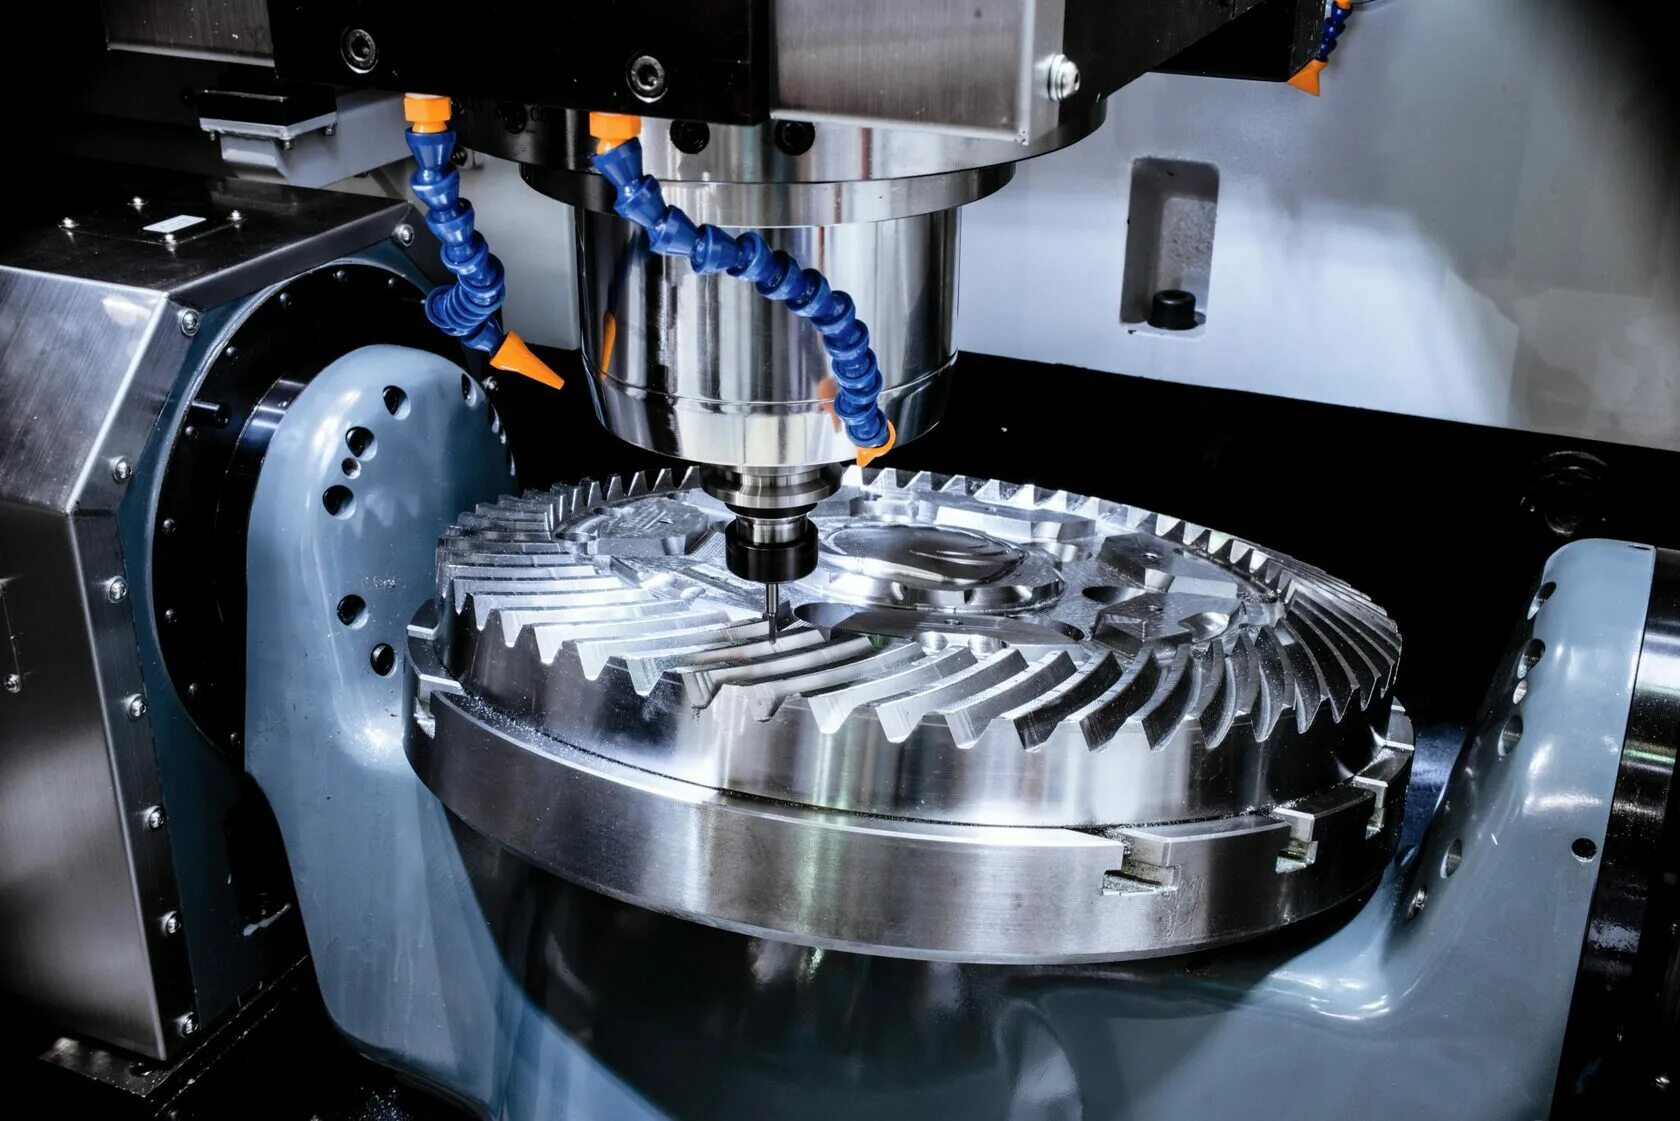 Механики и машиностроение. 5-Axis CNC milling. 5 Axis CNC Machining. CNC milling Machine. Детали для обработки на станке ЧПУ фрезерном.